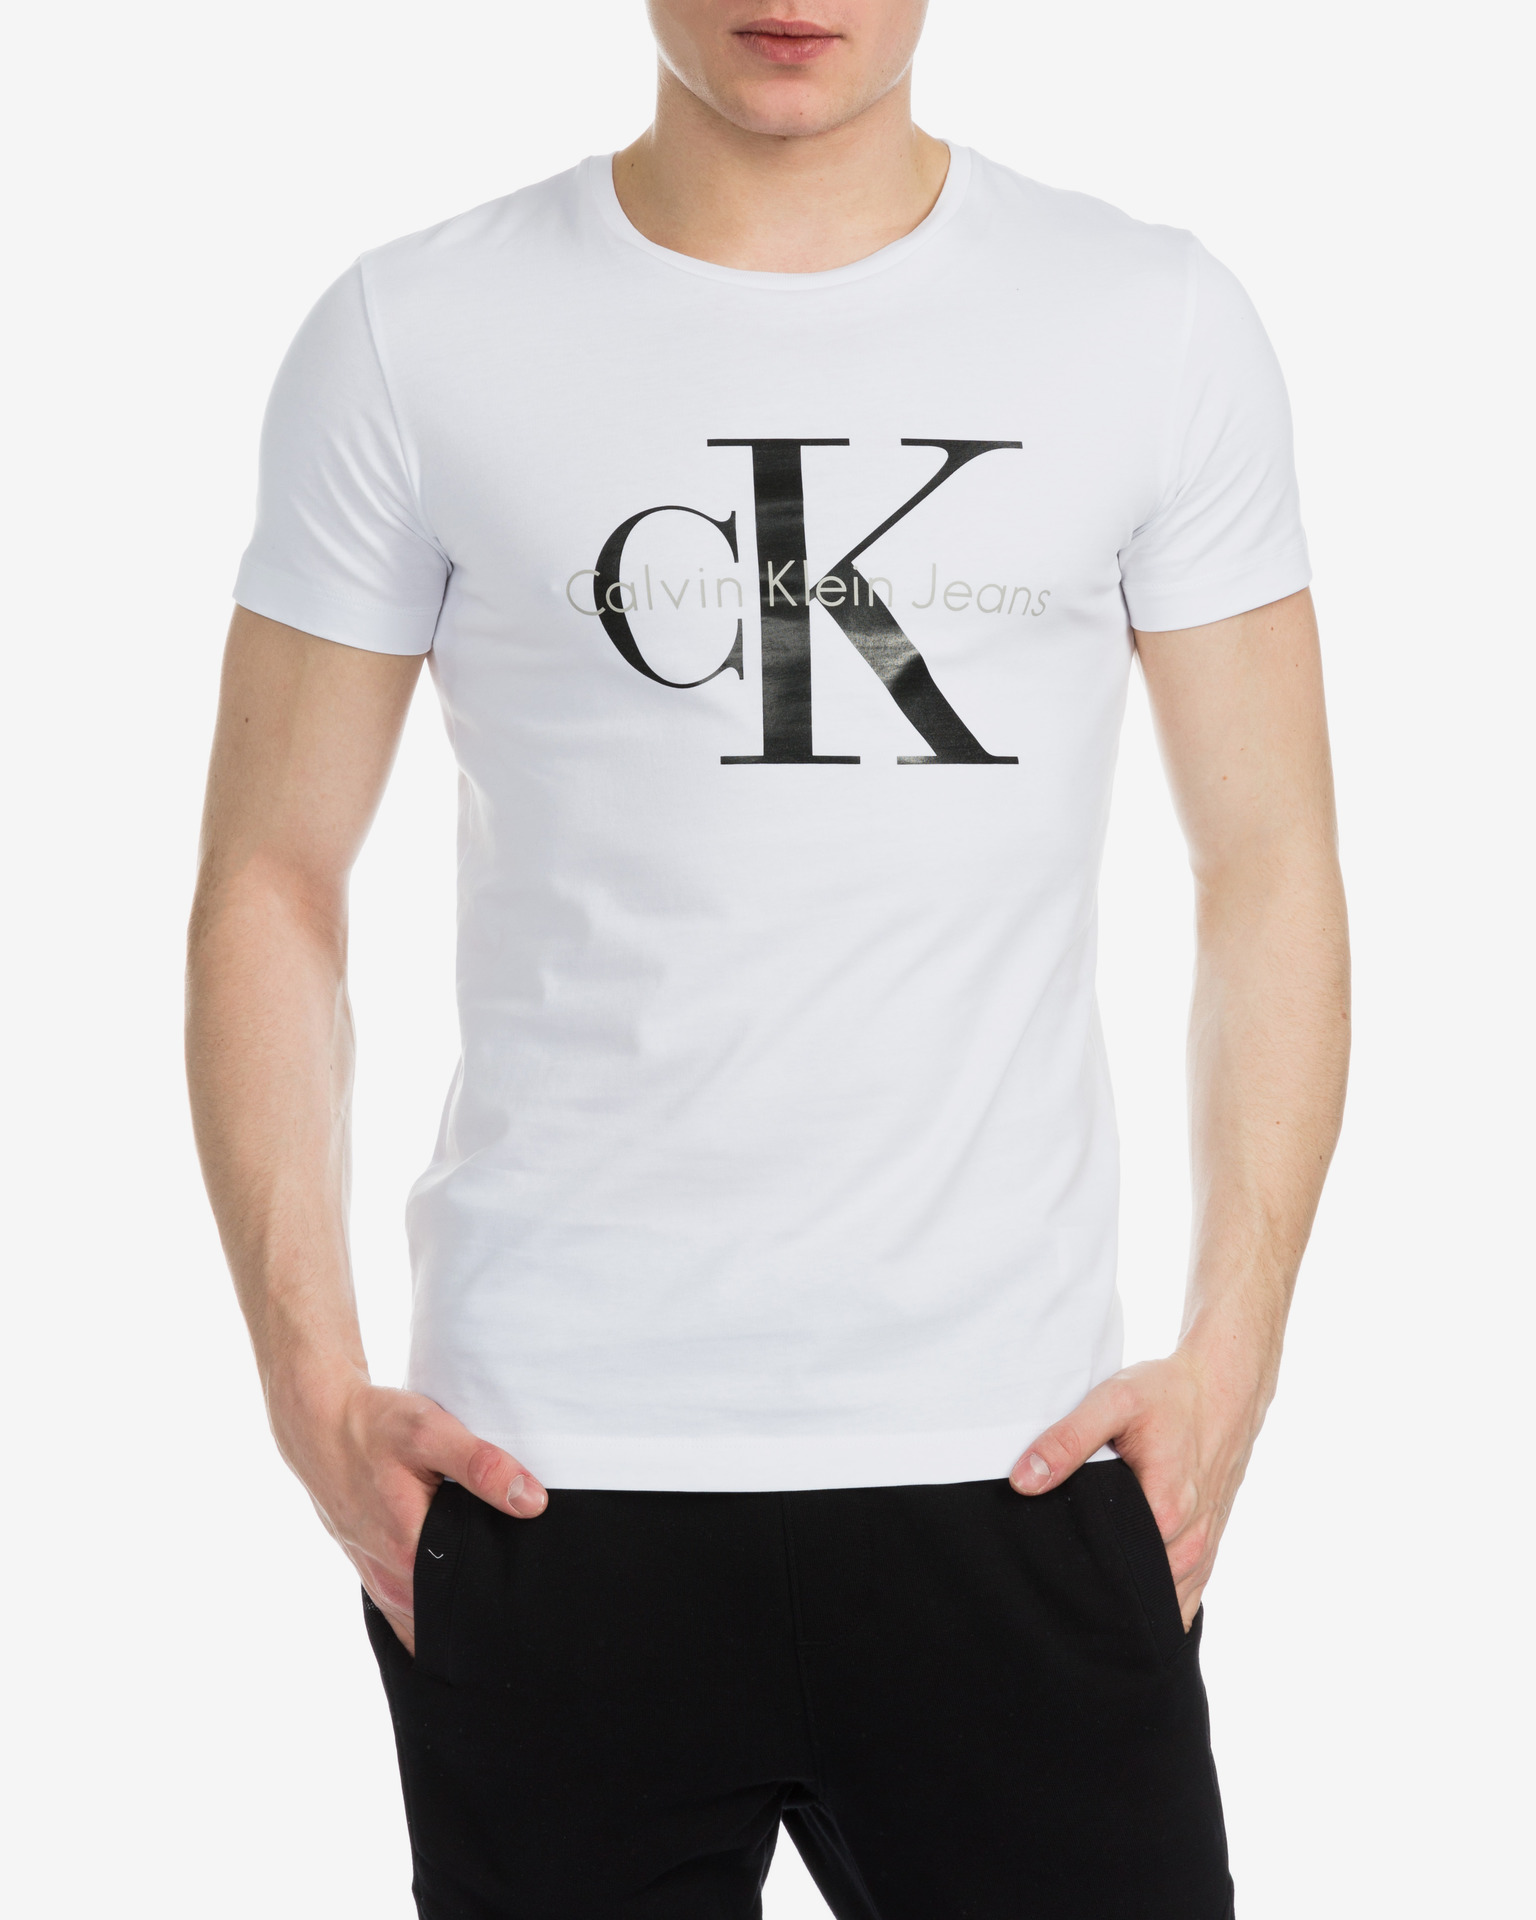 Calvin Klein - T-shirt Bibloo.com